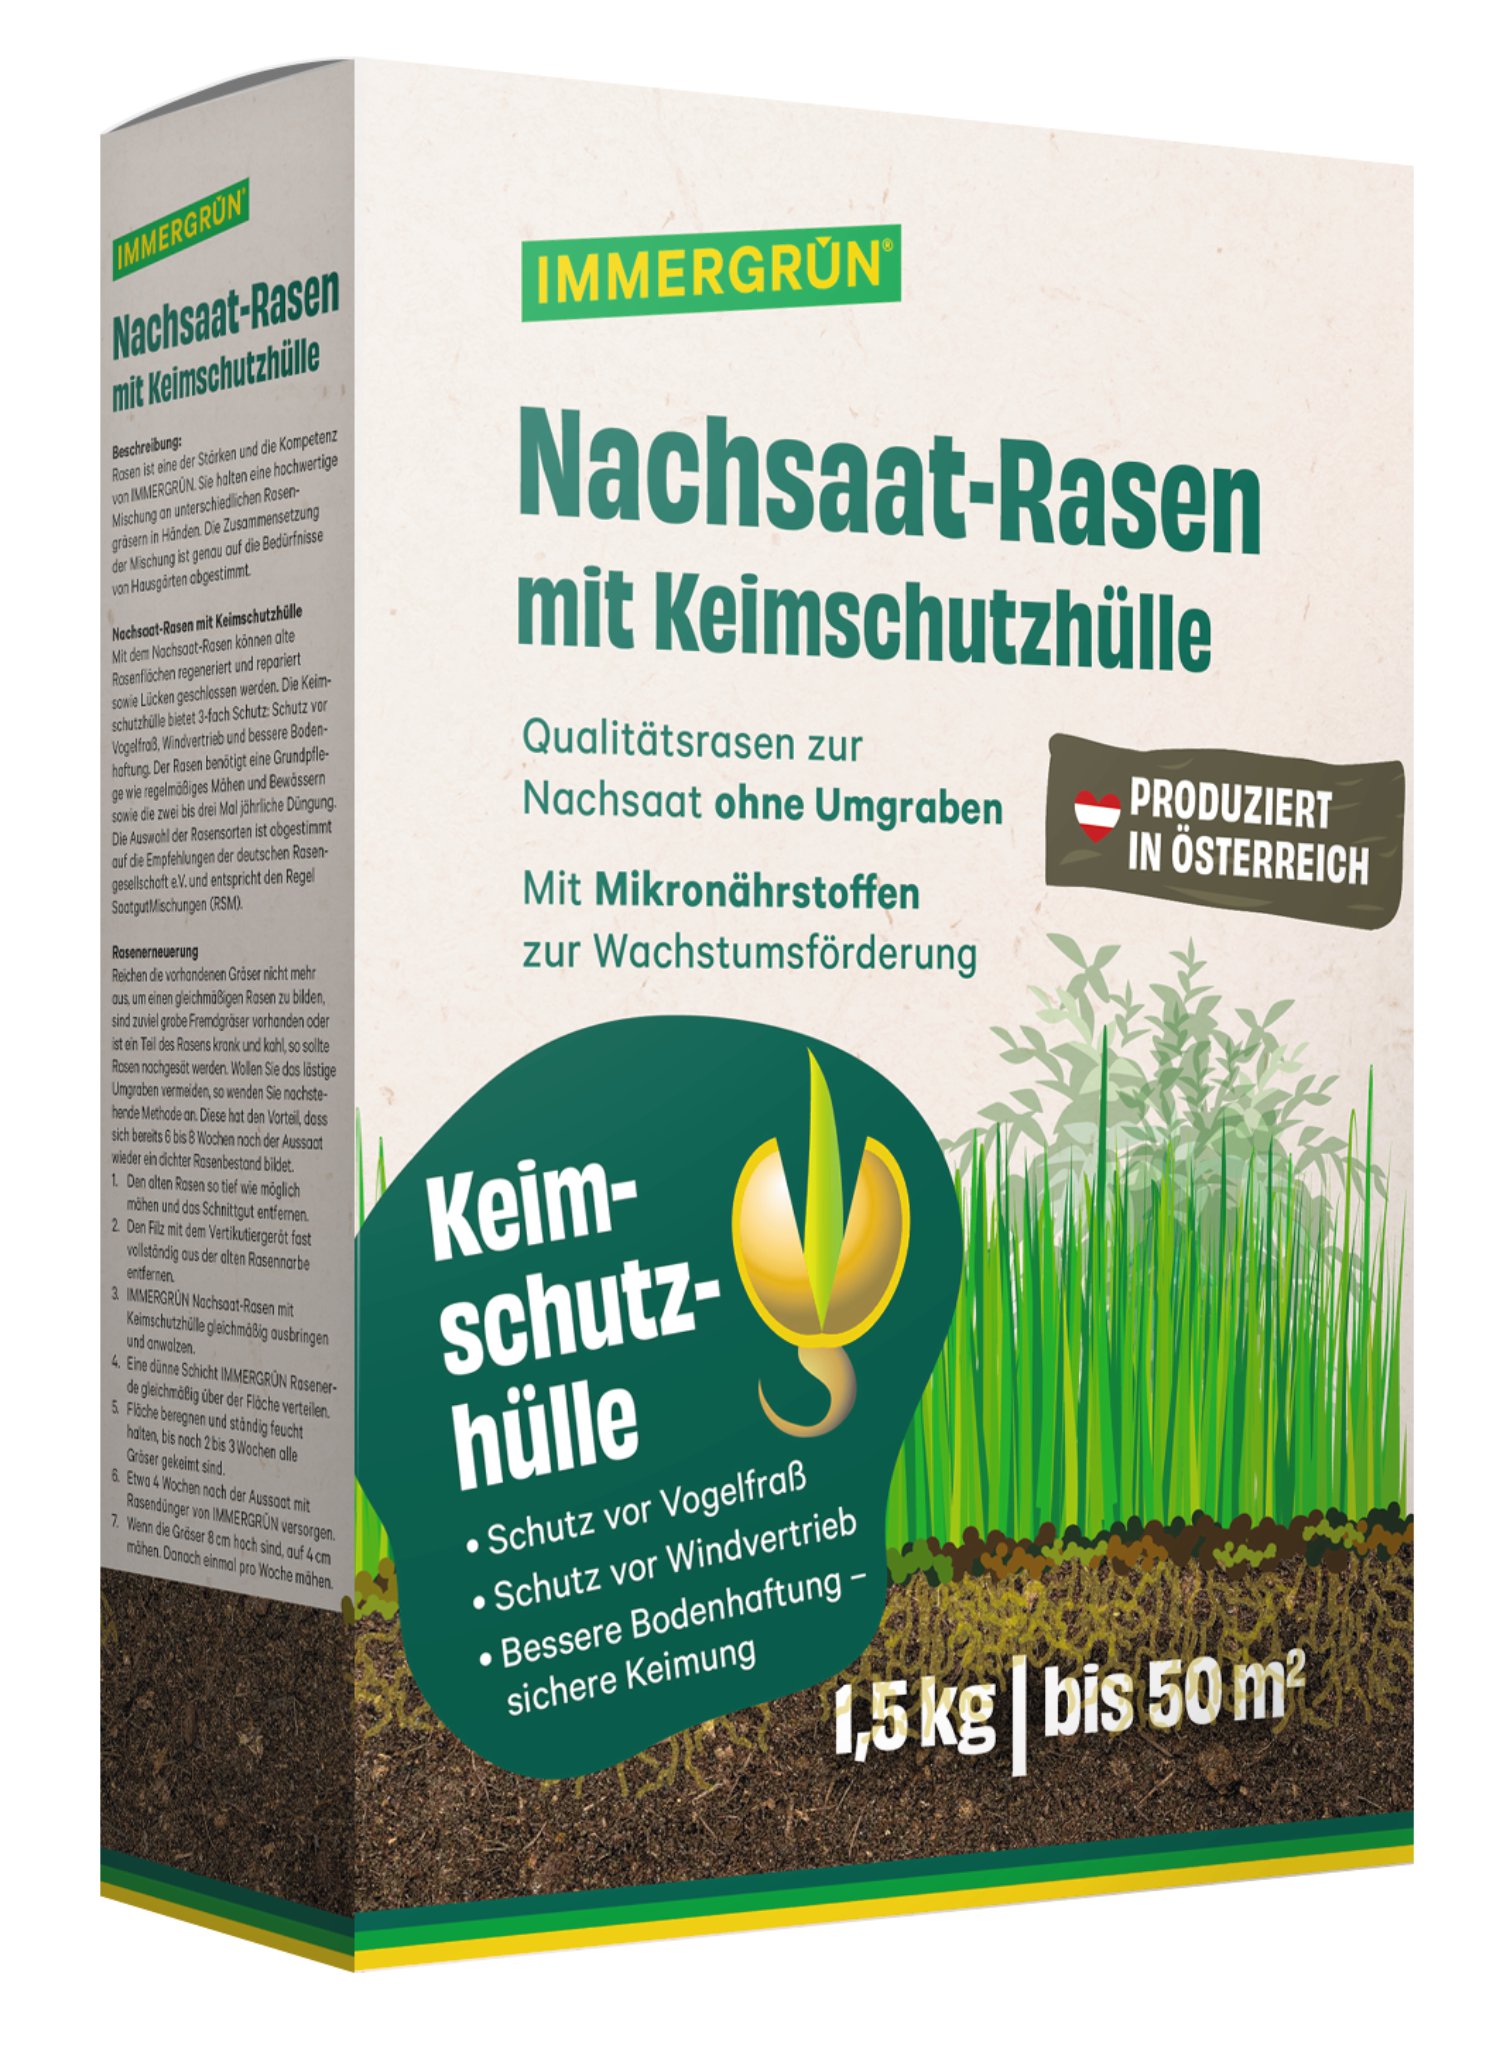 IMMERGRÜN Nachsaat-Rasen mit Keimschutzhülle 1,5 kg